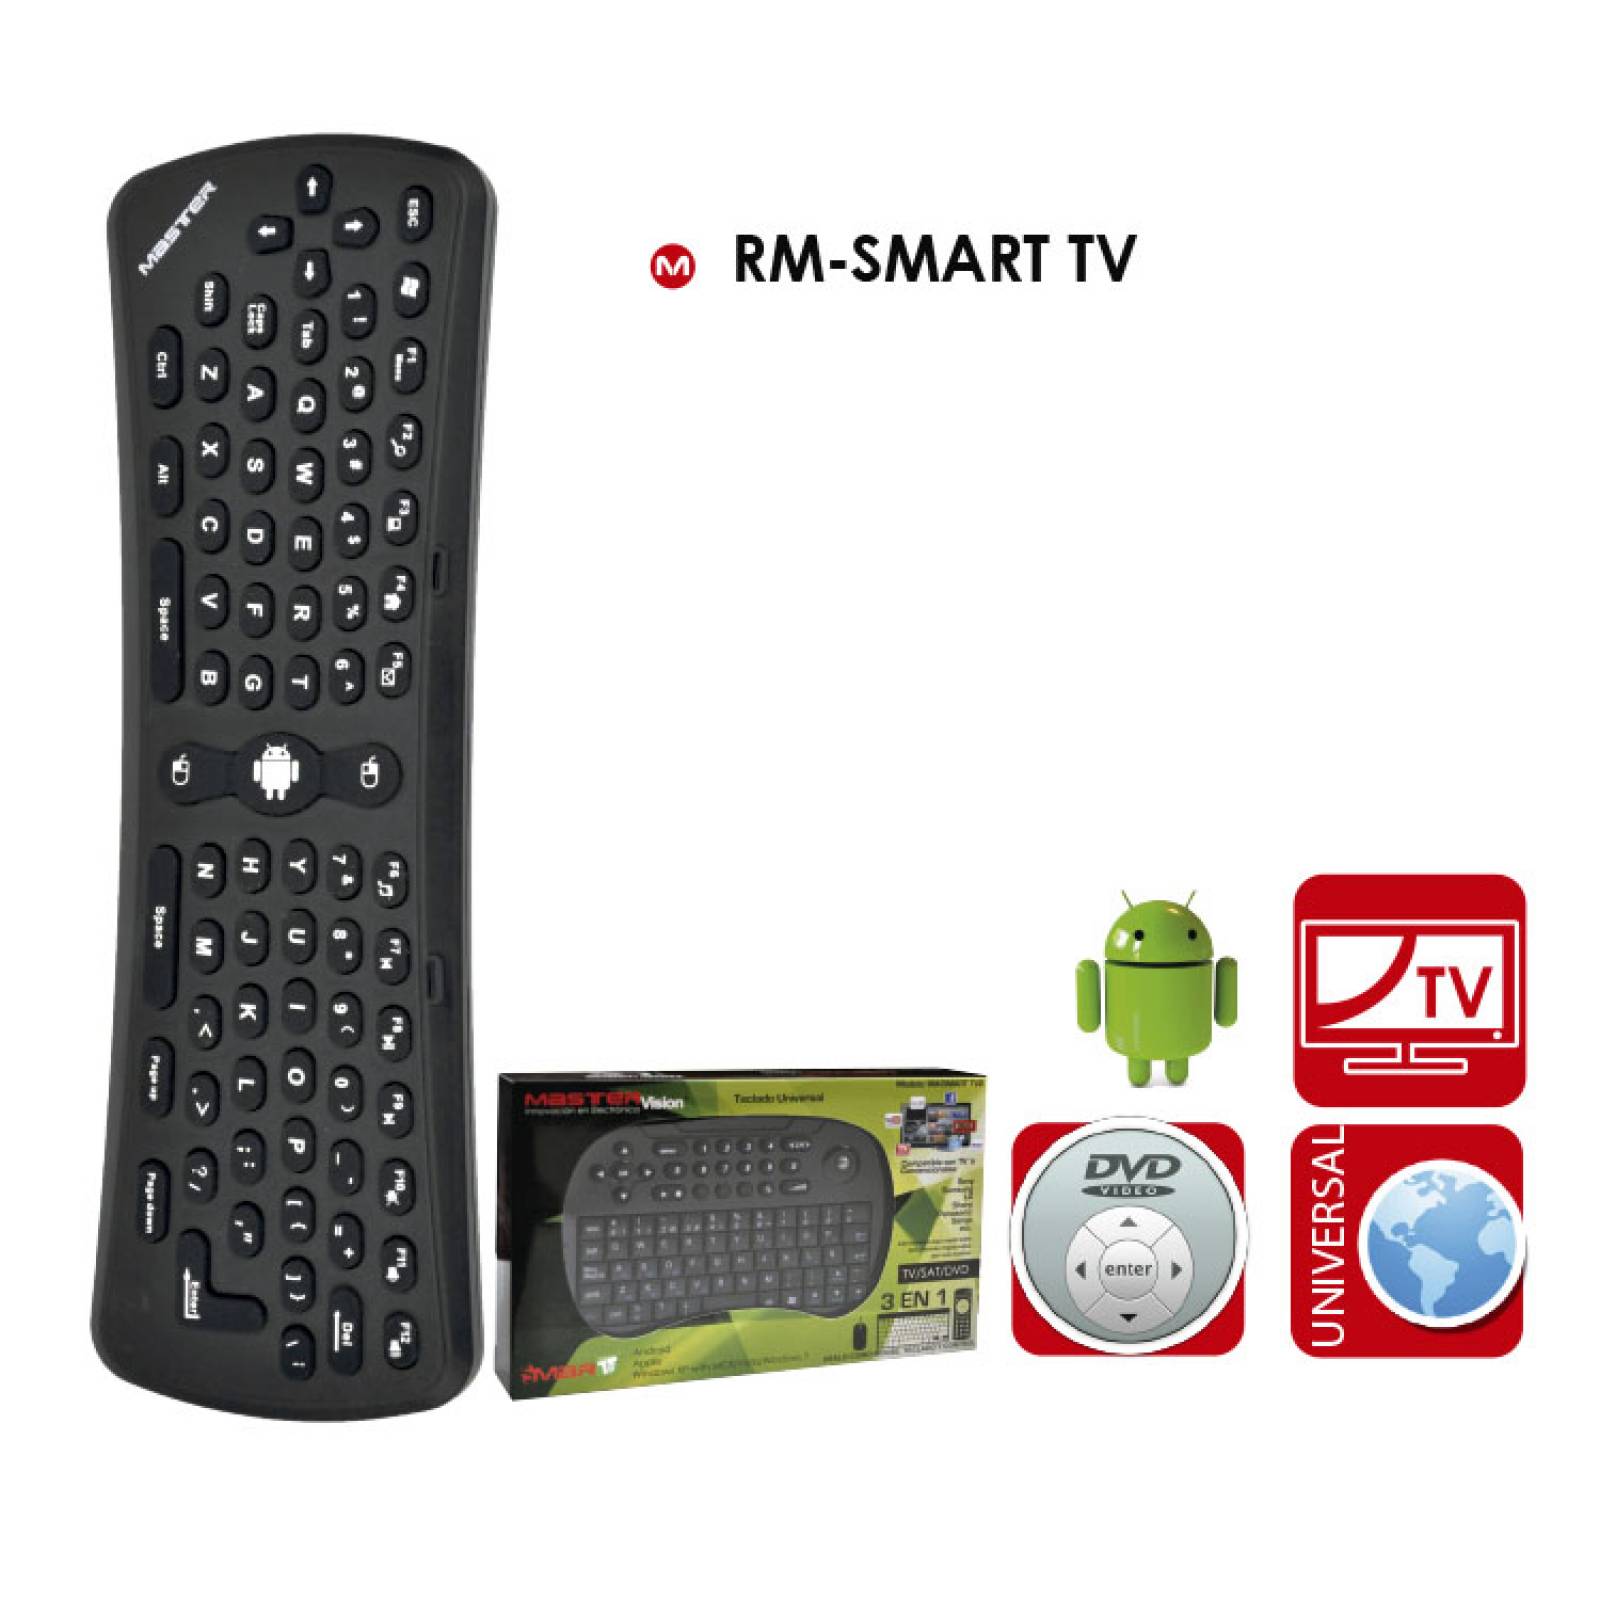 Teclado y mouse Master Inalambrico  RM-SMART TV